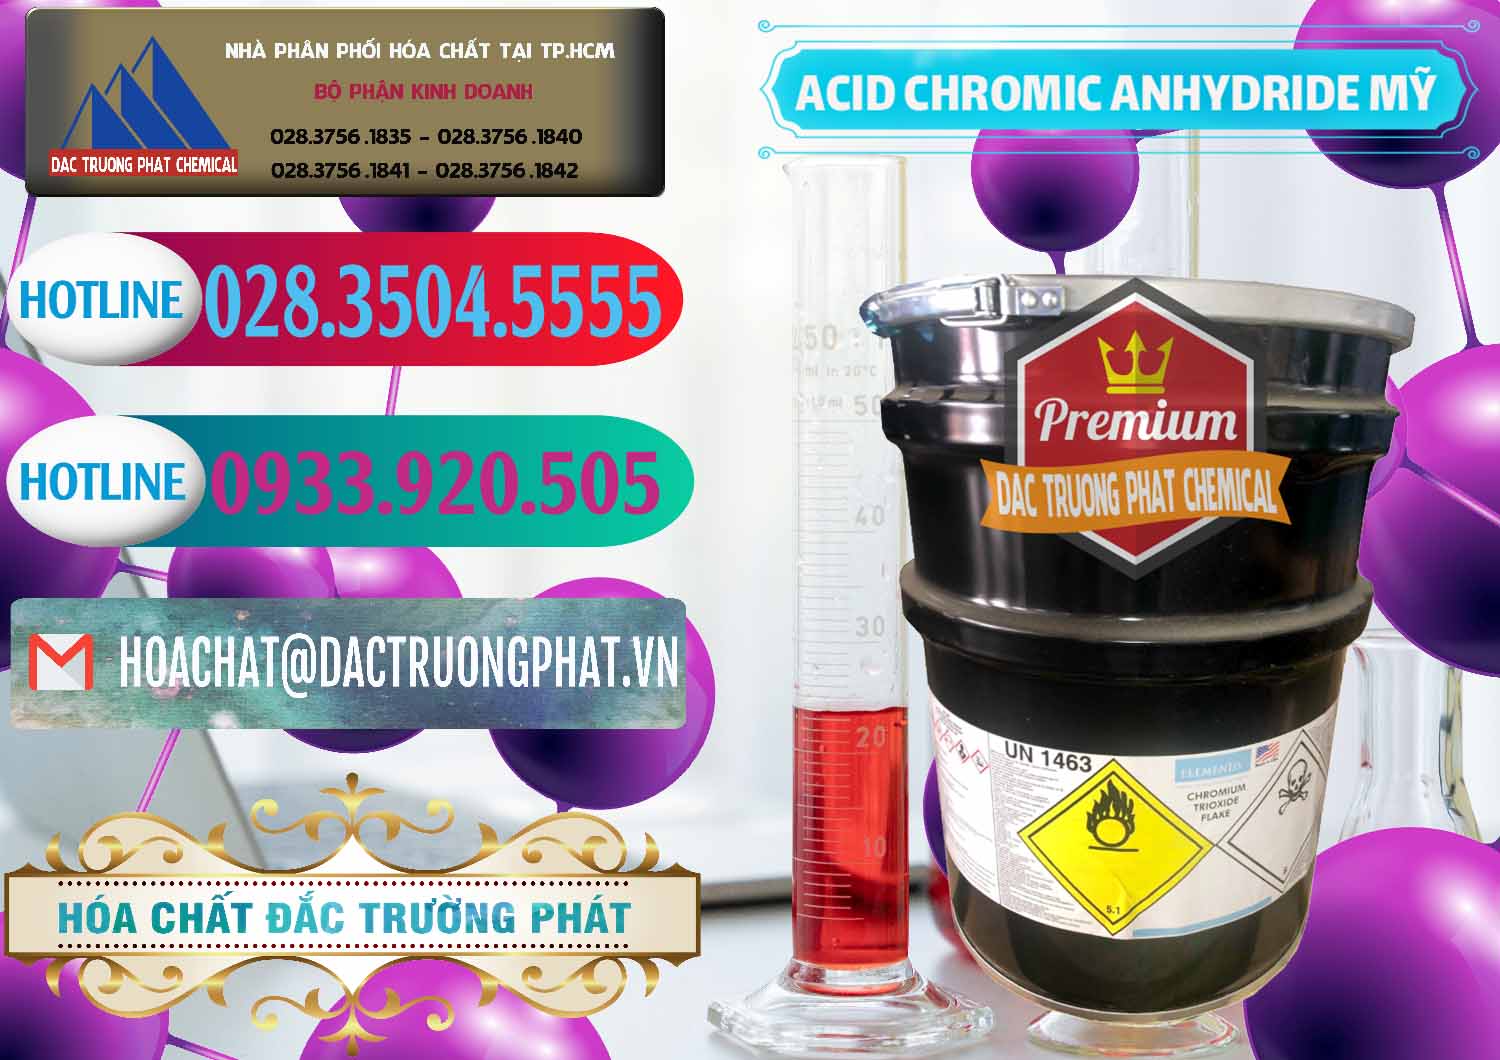 Nơi chuyên cung ứng - bán Acid Chromic Anhydride - Cromic CRO3 USA Mỹ - 0364 - Nơi chuyên kinh doanh - cung cấp hóa chất tại TP.HCM - truongphat.vn